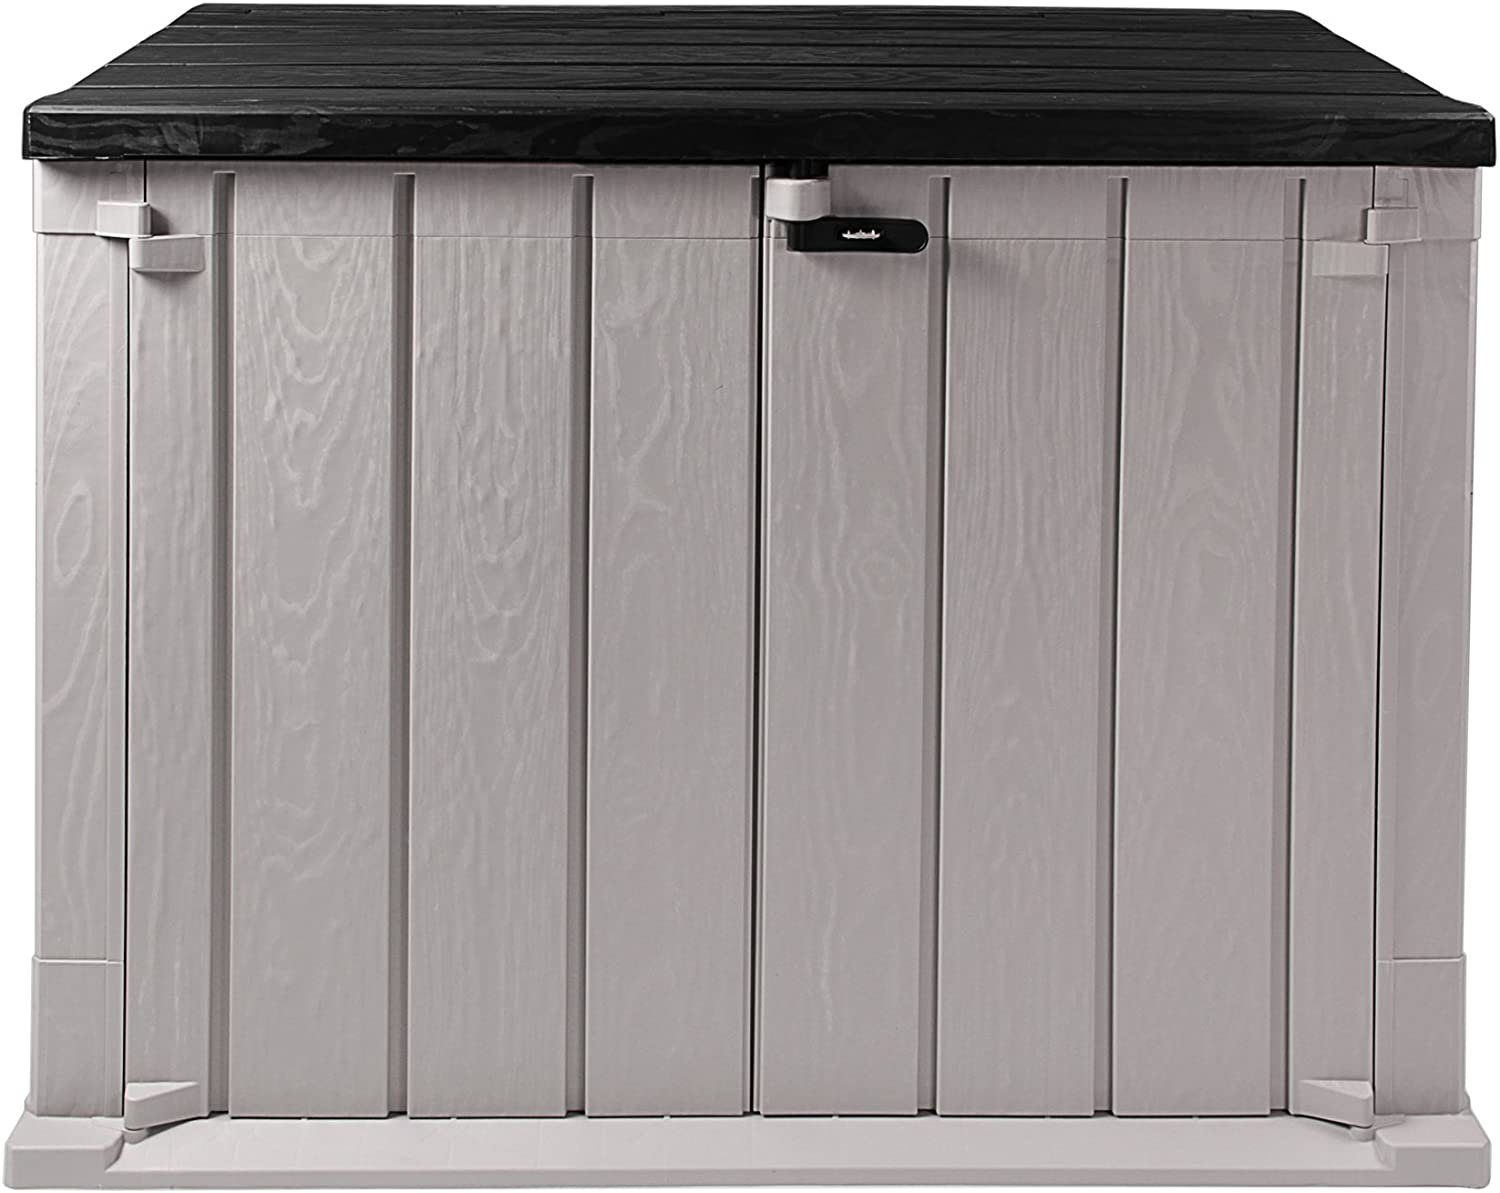 ONDIS24 Gartenbox Mülltonnenbox Storer Light XL Gerätebox abschließbar, für 2 Mülltonnen (1330 Liter) robust, wetterfest, belastbar grau-anthrazit